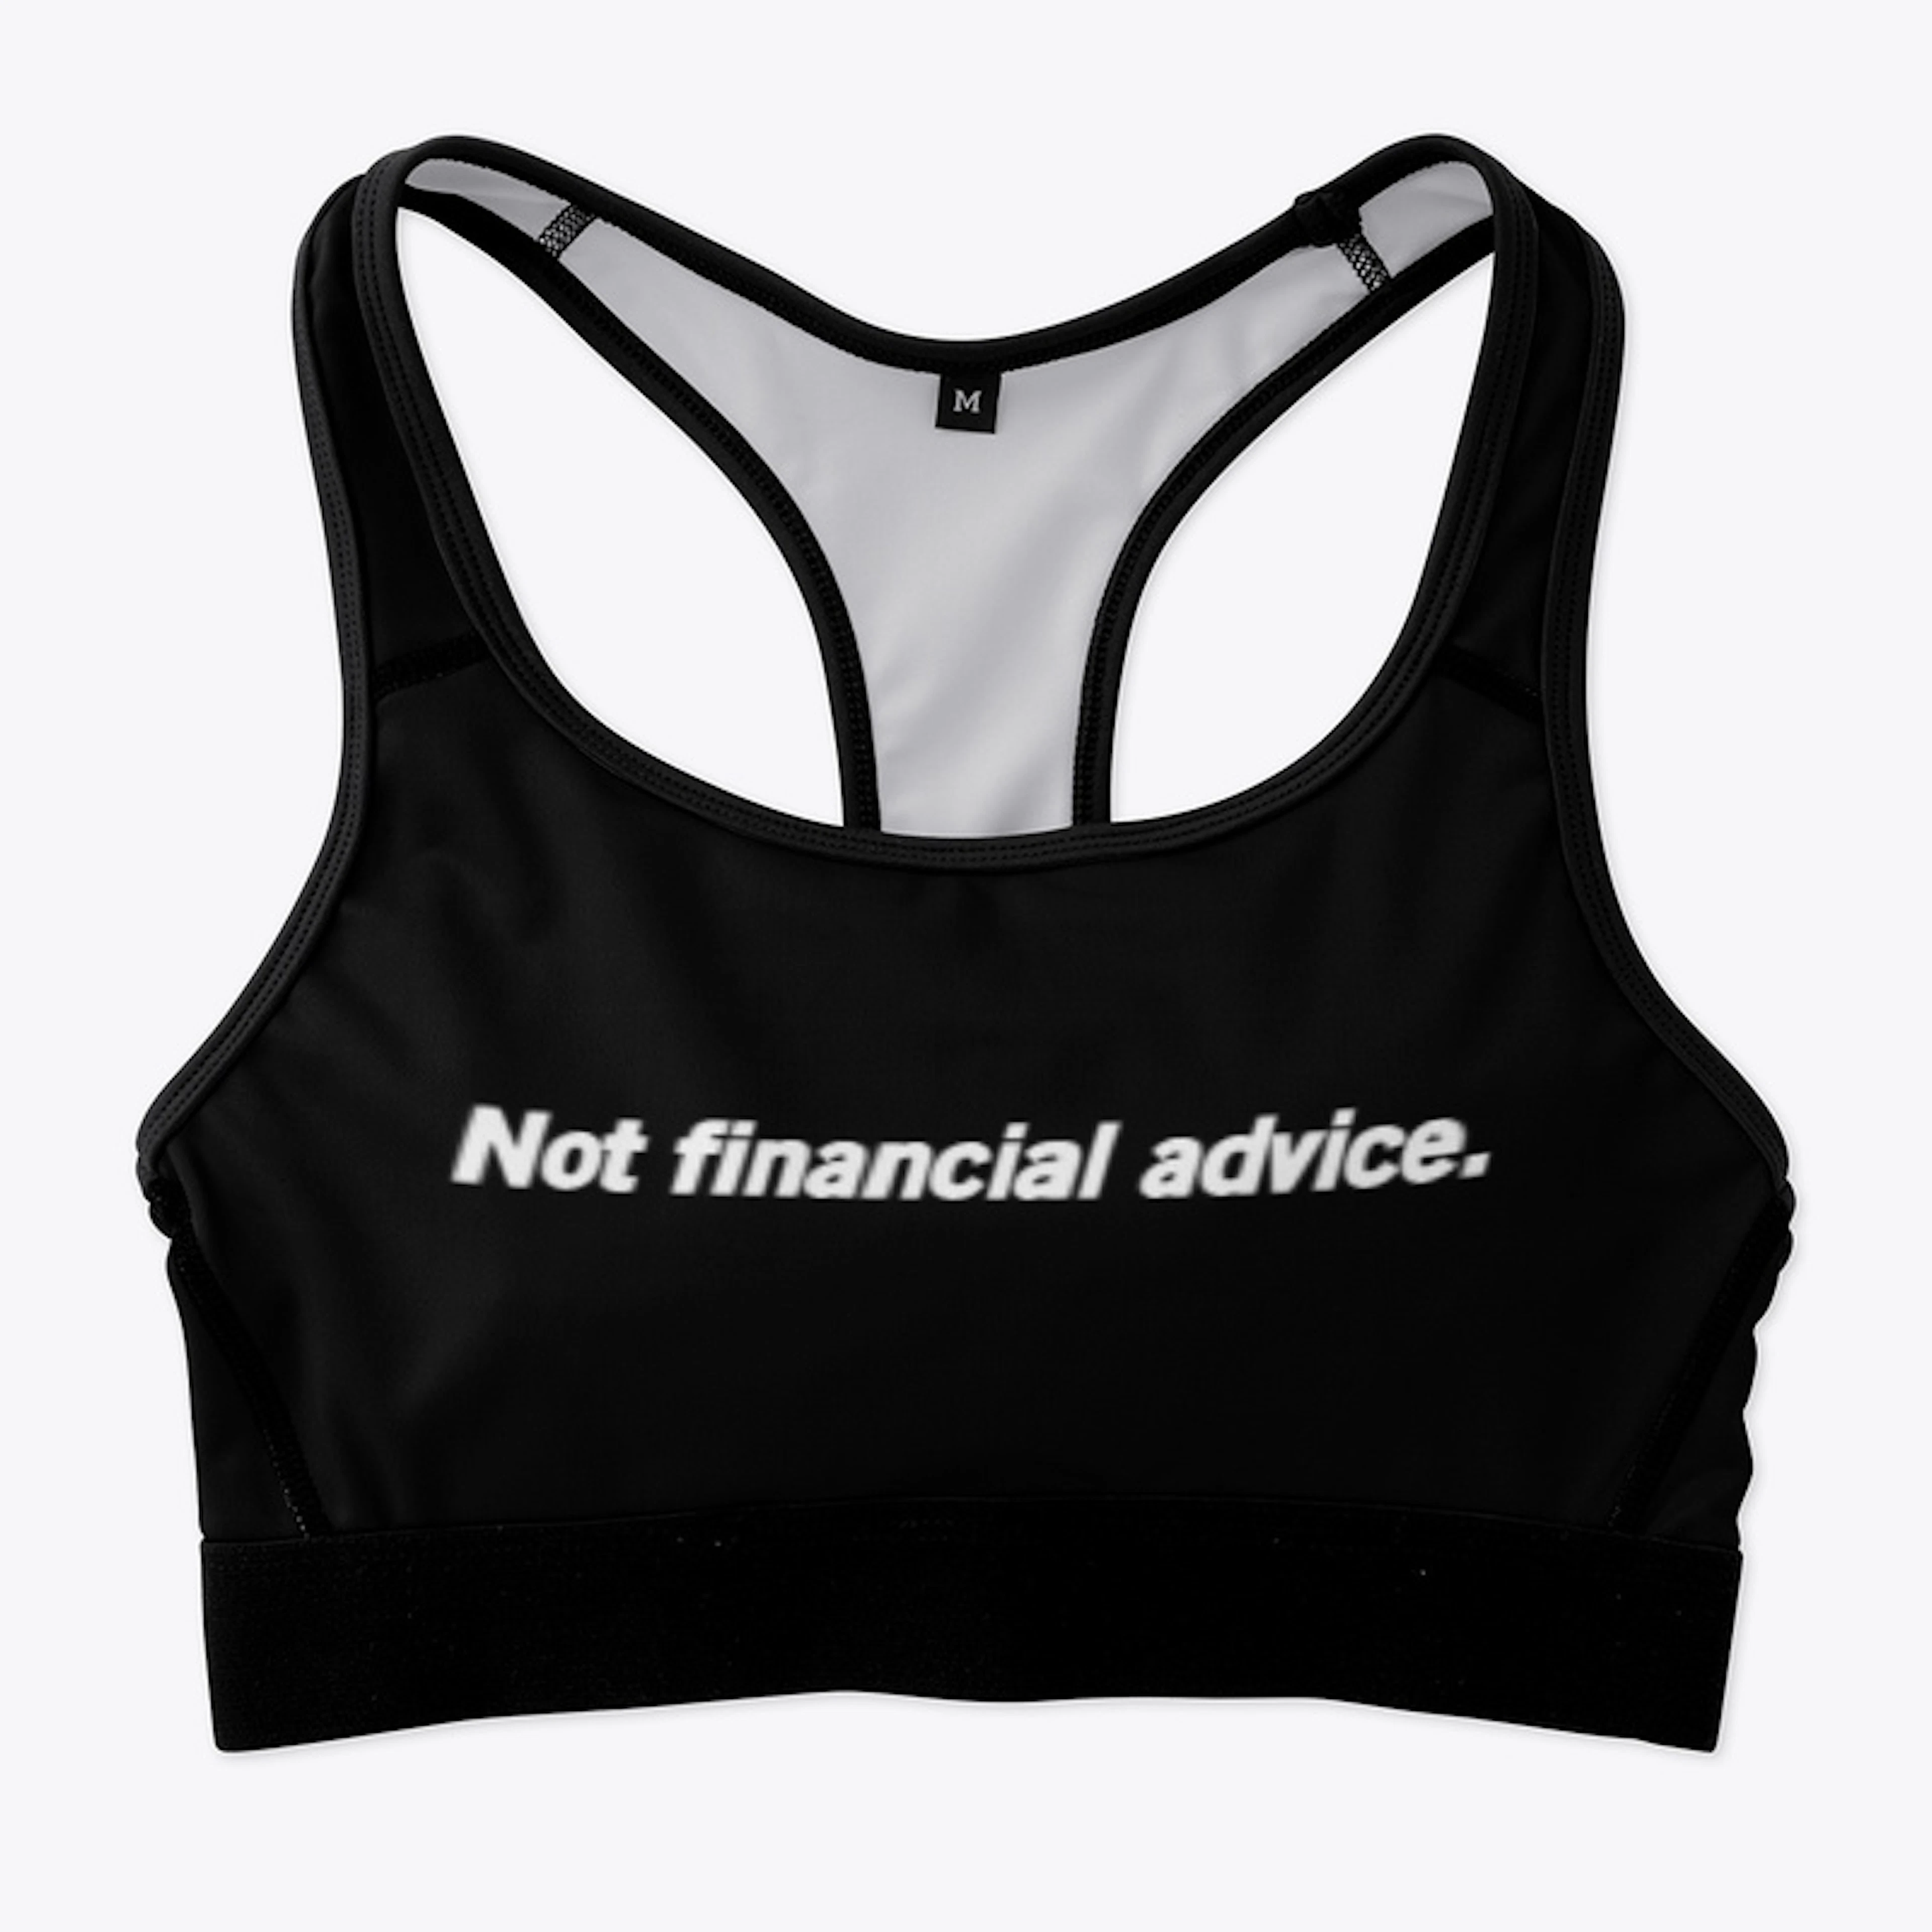 Not financial advice. Merch